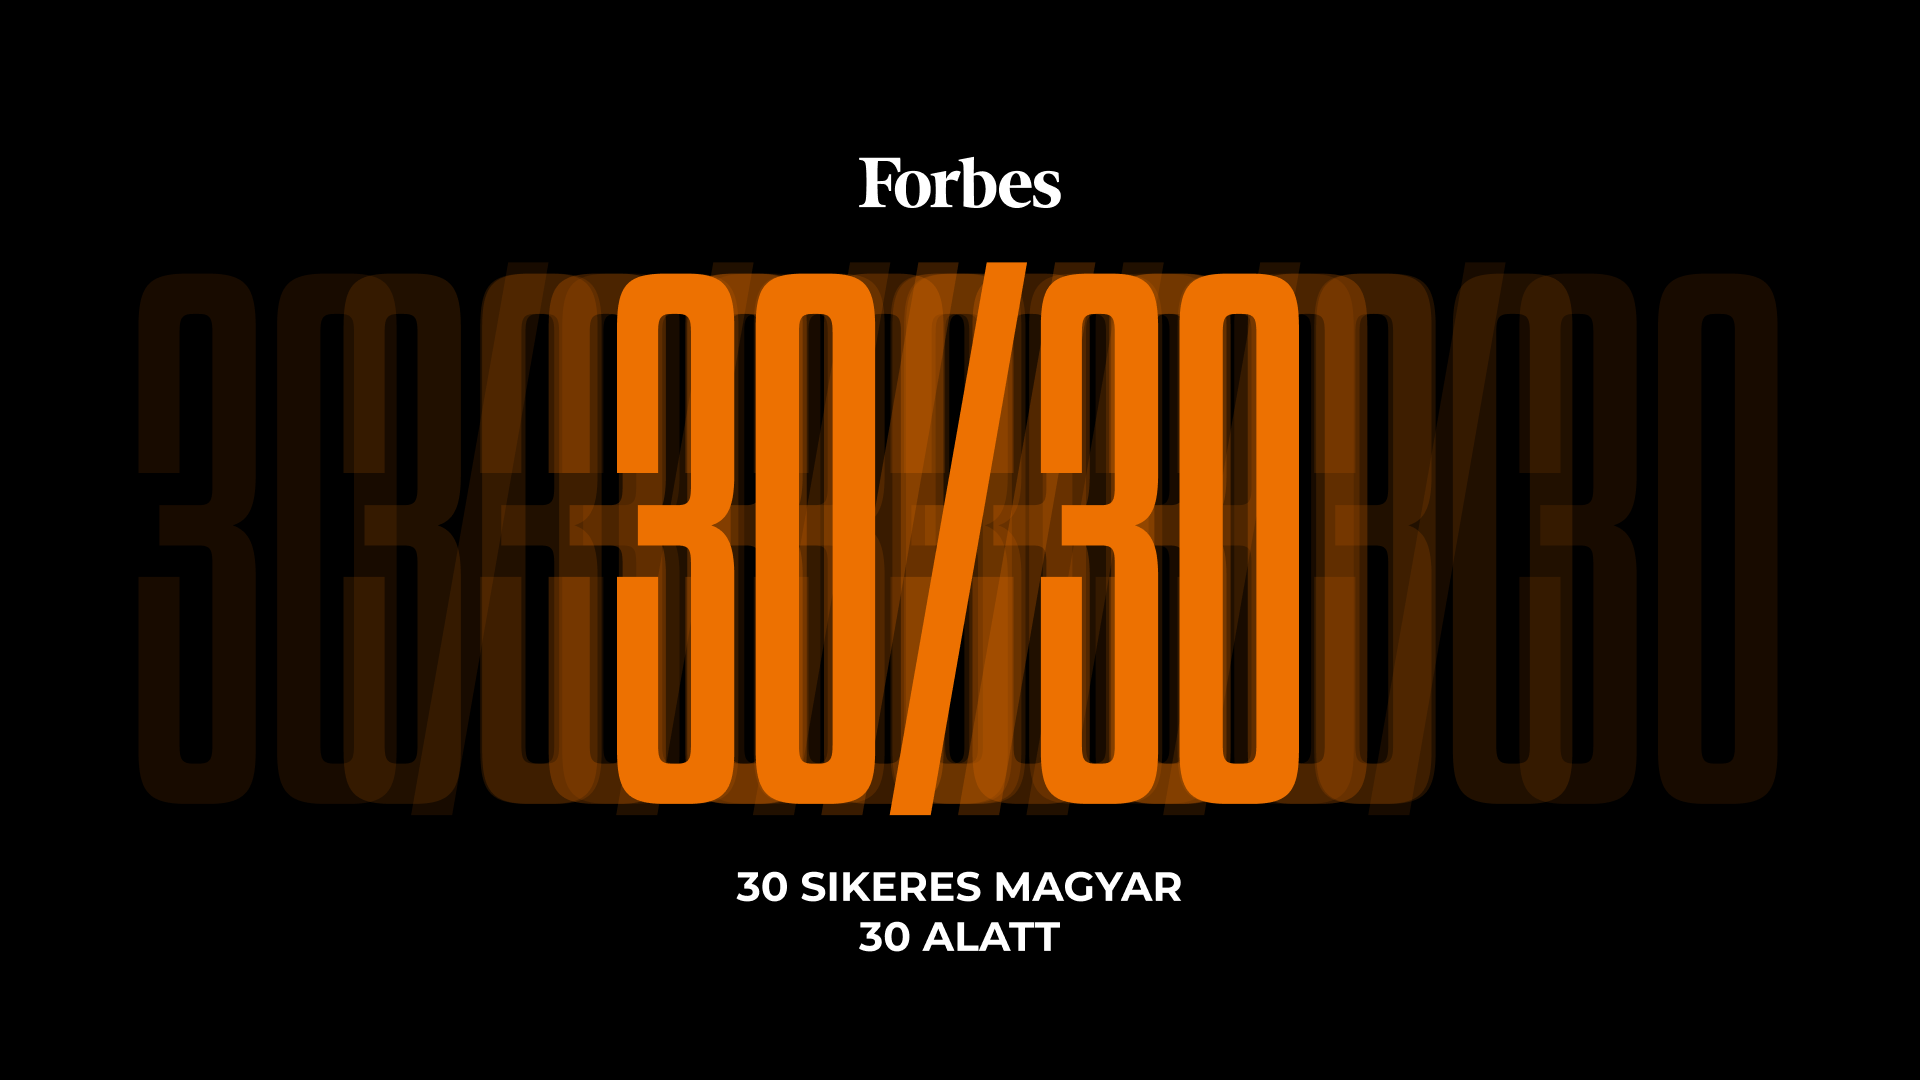 Újabb 30 sikeres 30 alatti magyart keres a Forbes – jelölj vagy jelentkezz!